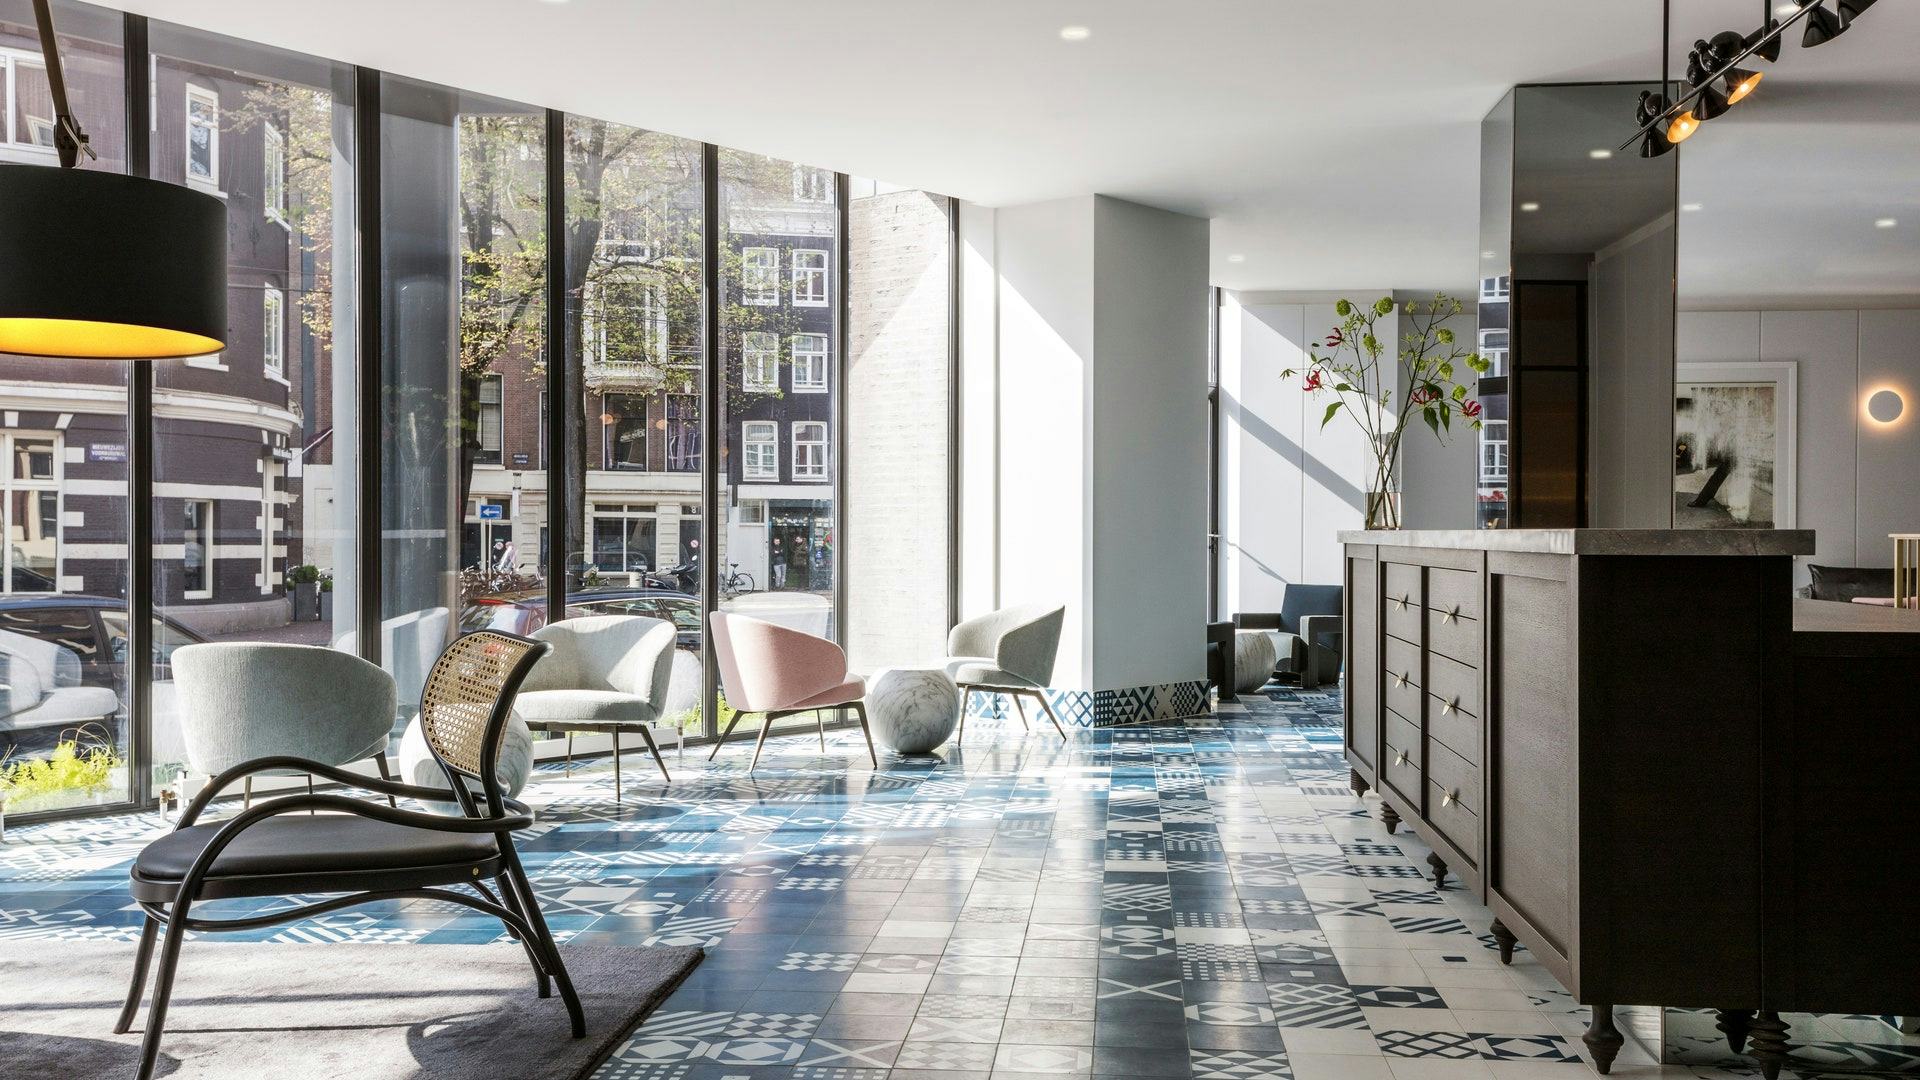 Dit zijn de beste hotels van Amsterdam volgens Condé Nast Traveler